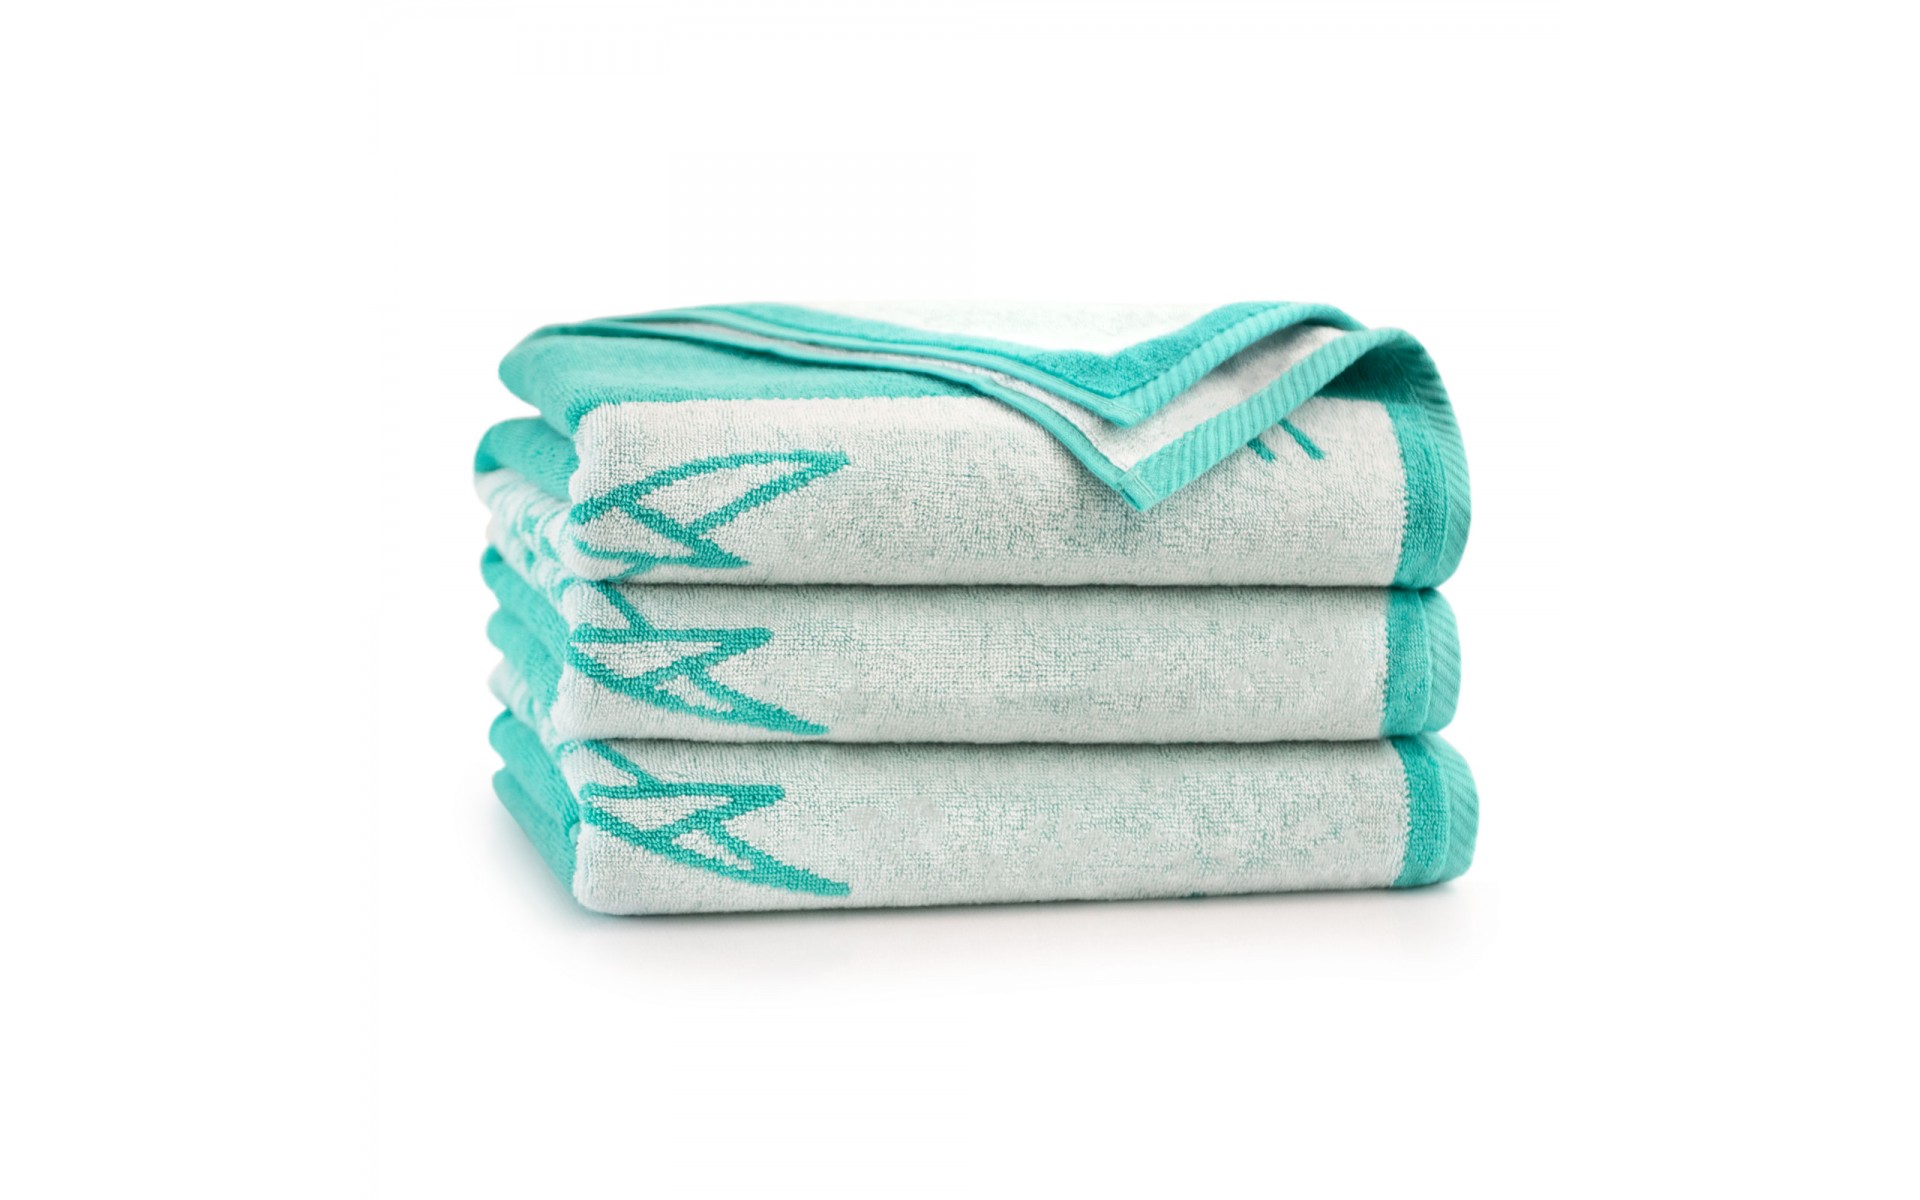 ręcznik REKIN niebieski - 7902